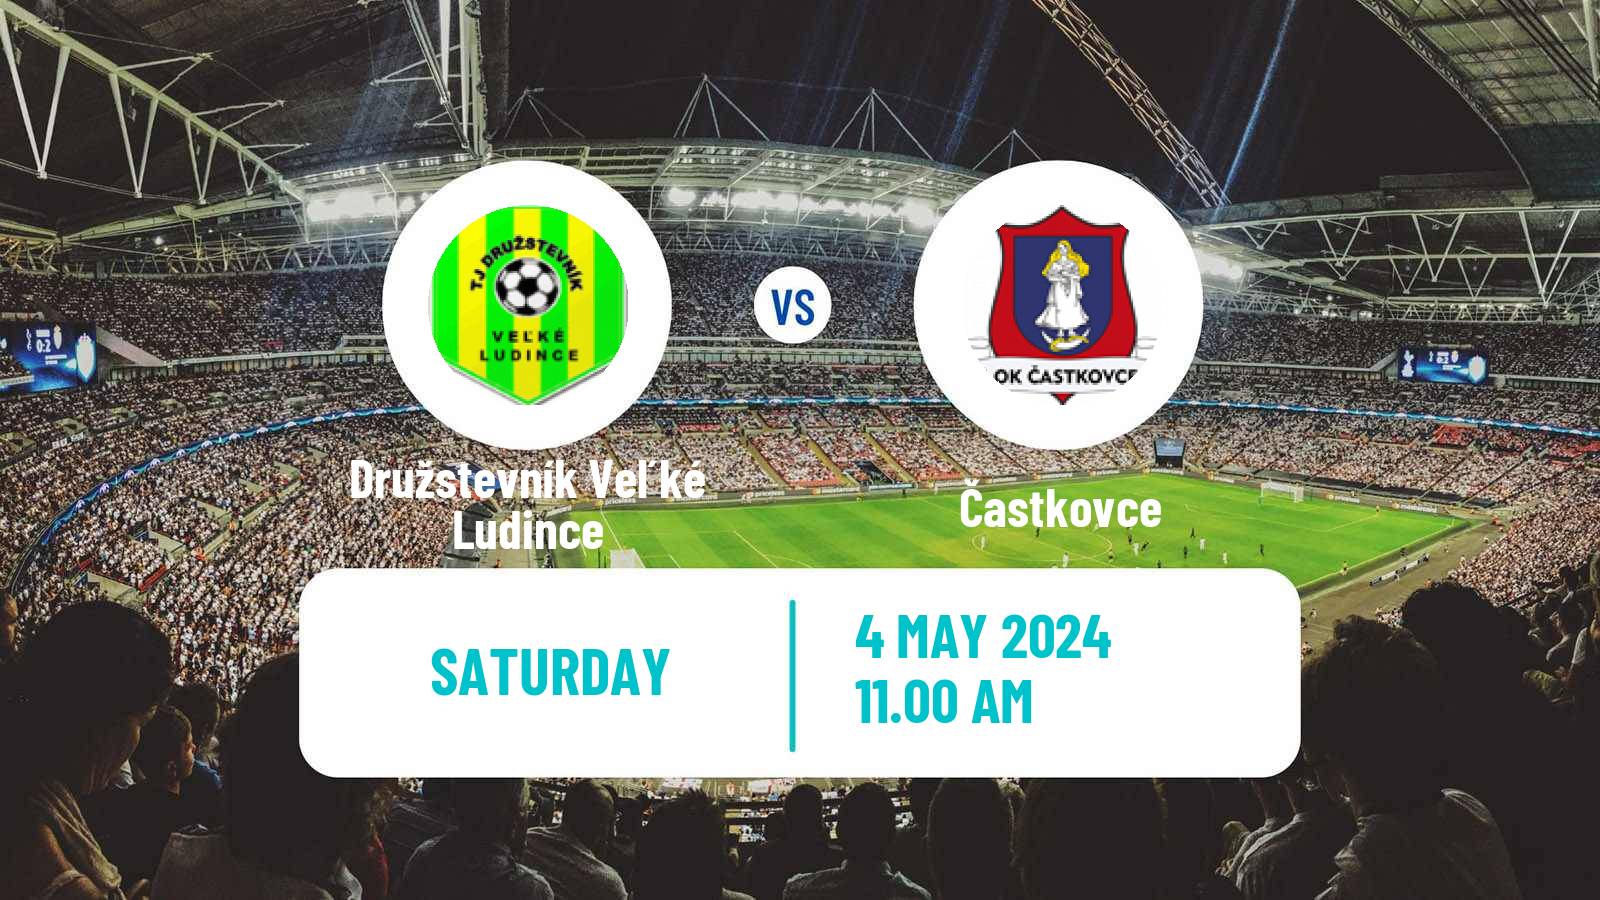 Soccer Slovak 3 Liga West Družstevník Veľké Ludince - Častkovce